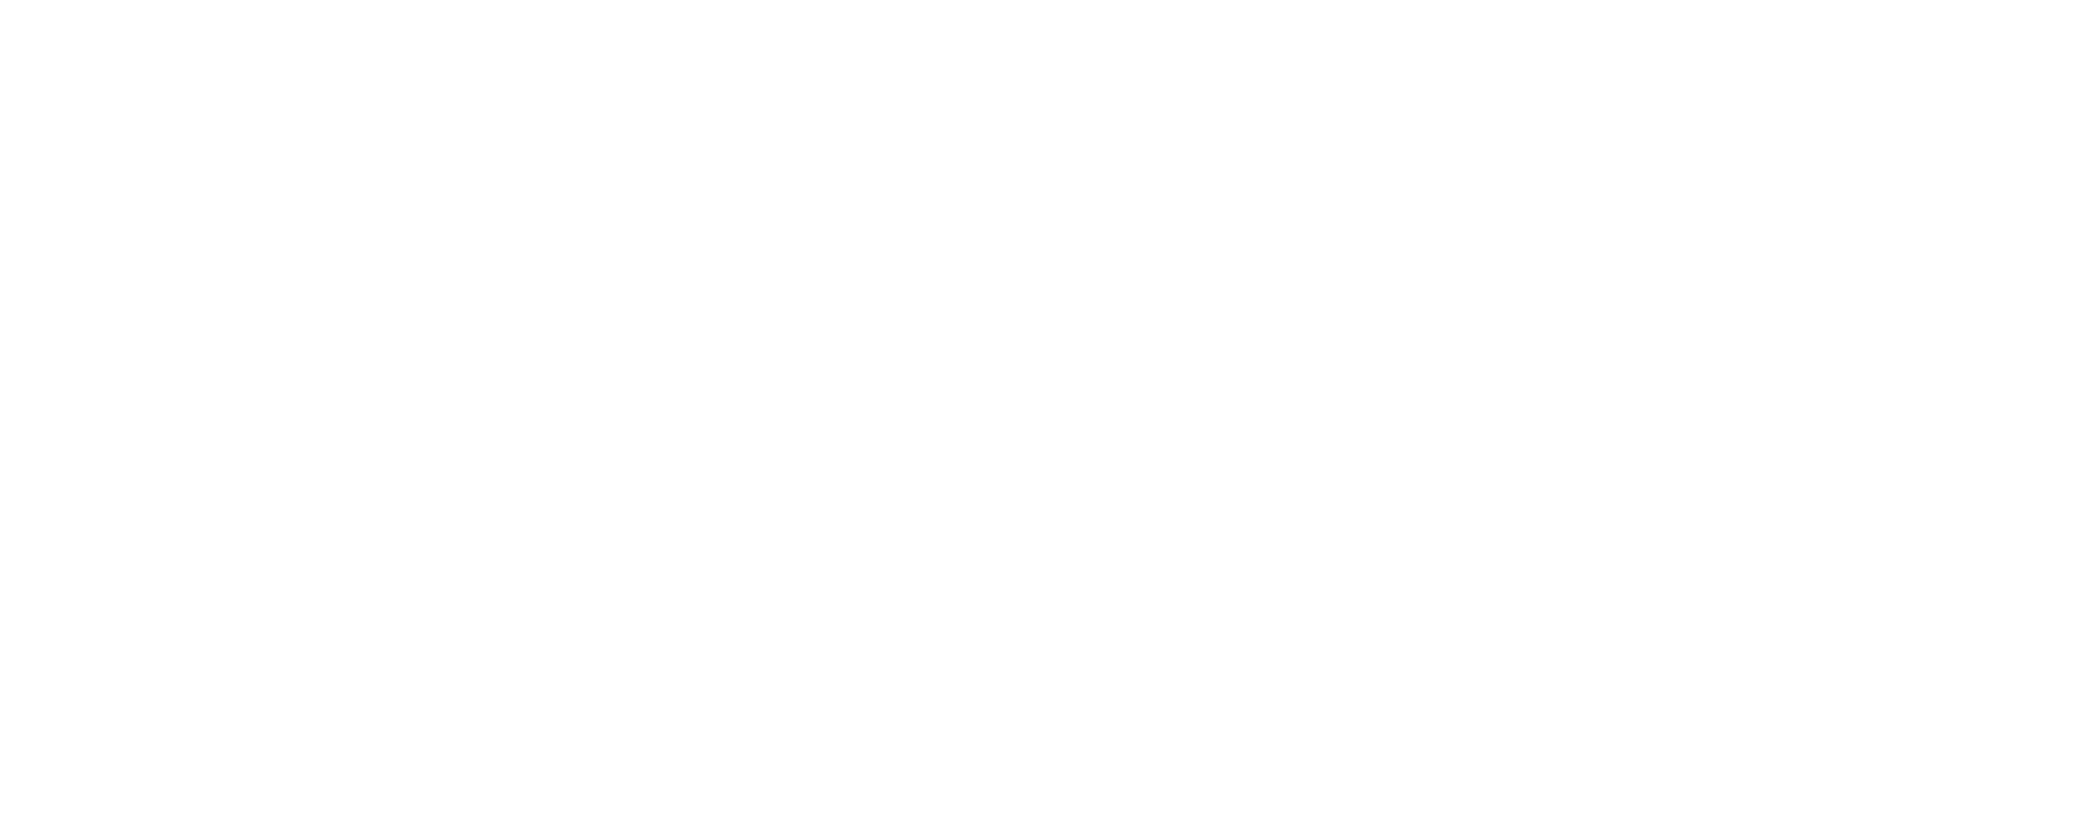 Guardian Glass White 3 logo